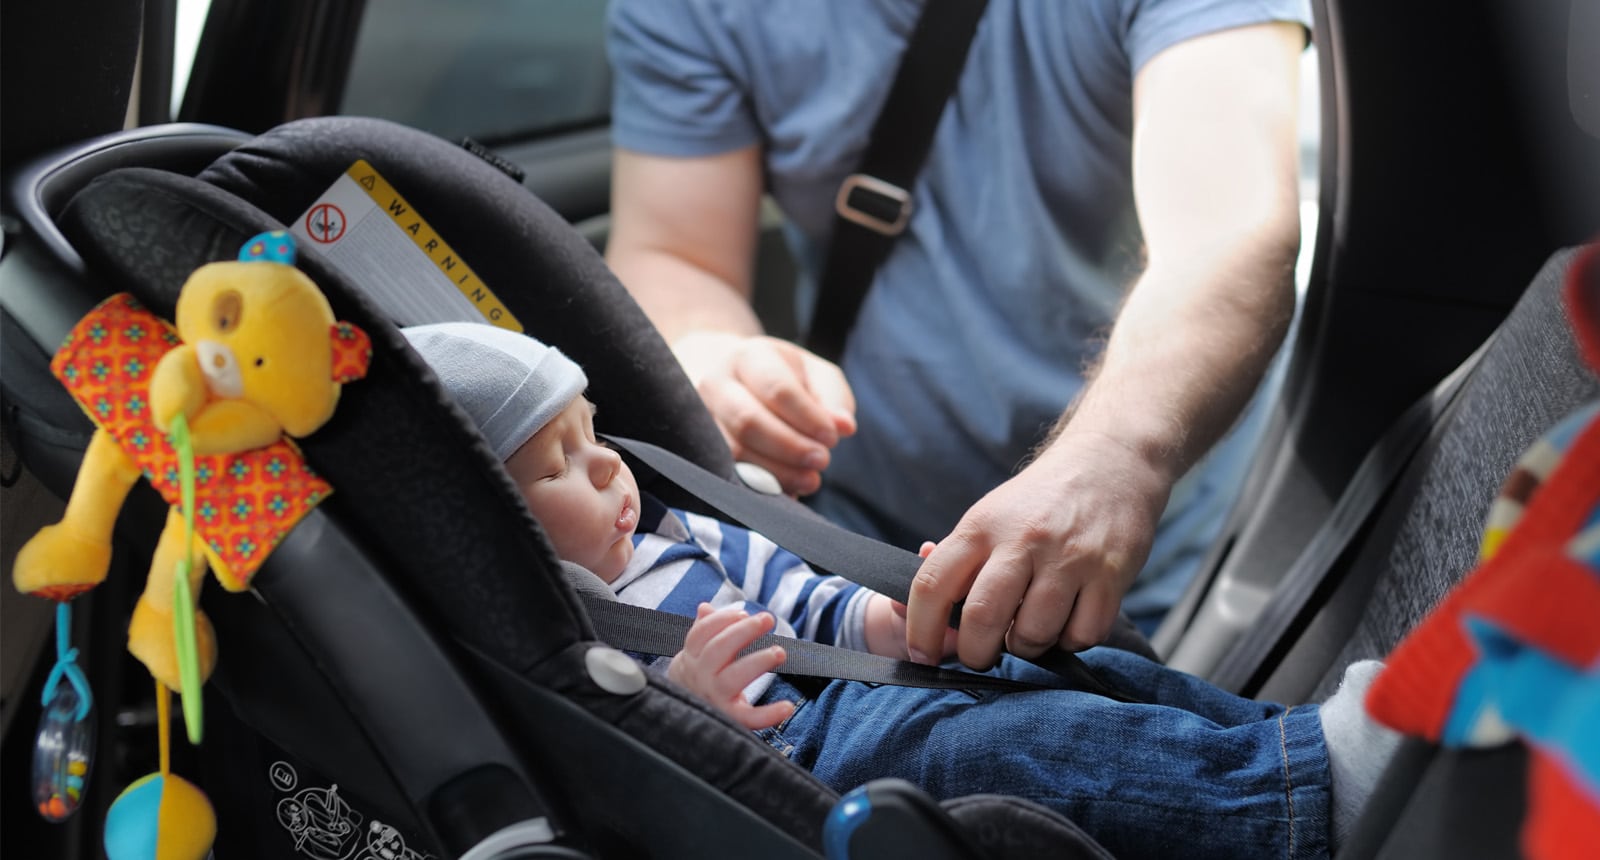 dice la normativa sobre sillas de coche para niños y bebés? Por Meses